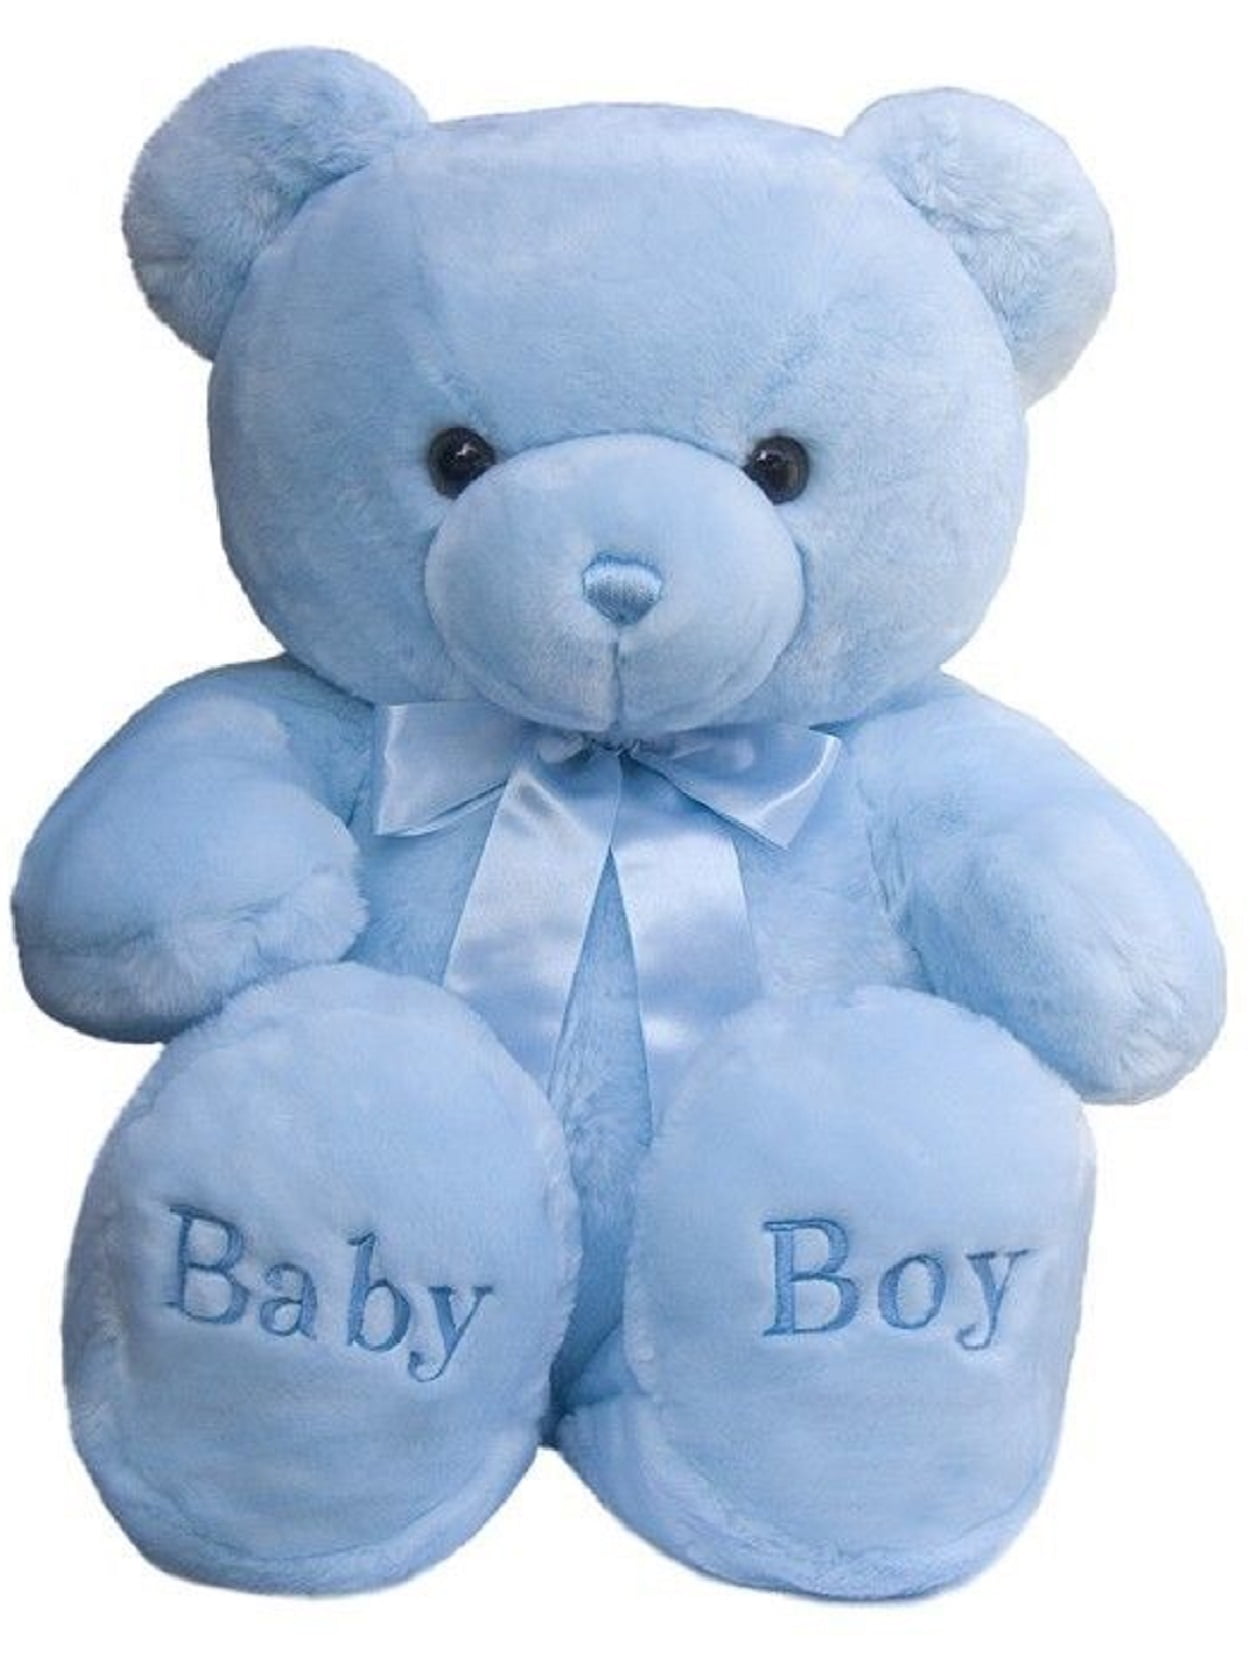 Boy Teddy Bear Plush 